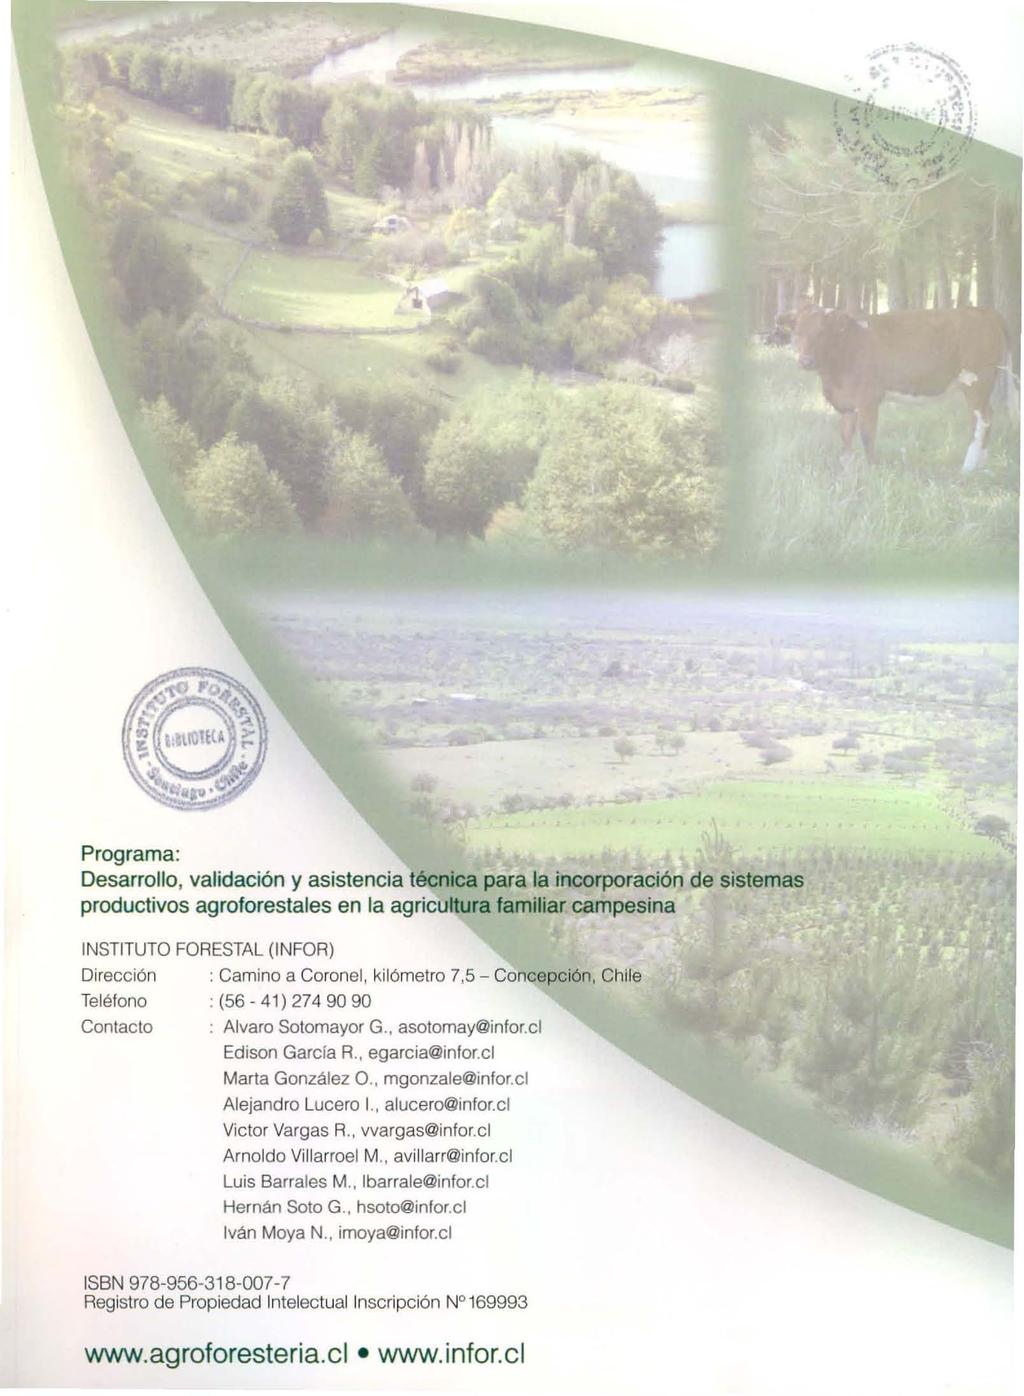 Programa: Desarrollo, validación y asistencia técnica para la incorporación de sistemas productivos agroforestales en la agricuhura familiar campesina INSTITUTO FORESTAL (INFOR) Dirección : Camino a